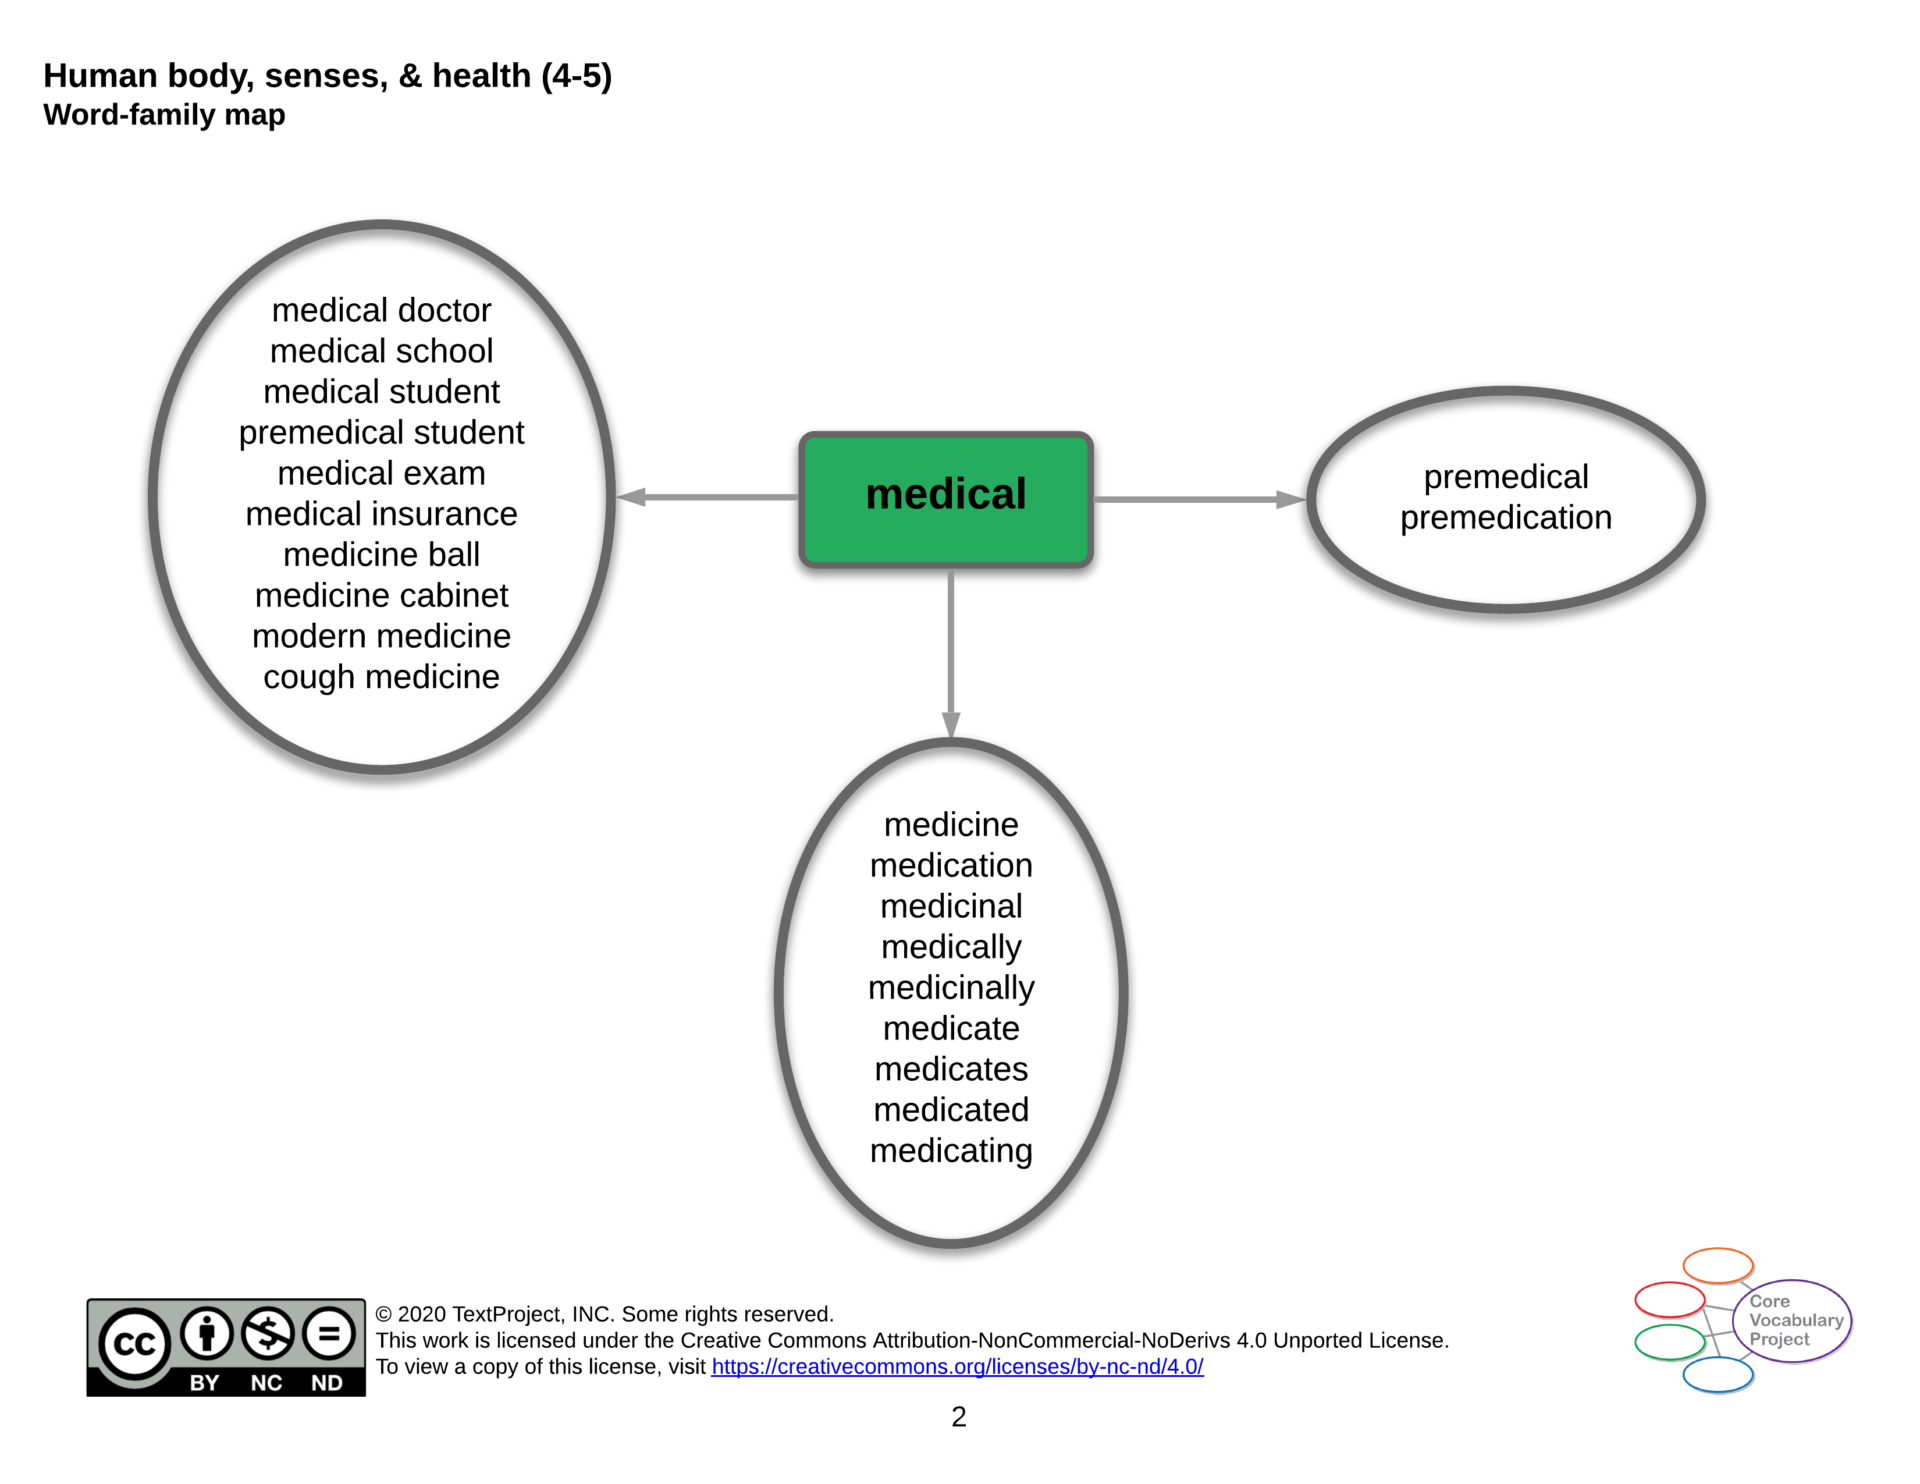 Human-body-senses-and-health-CVP-GR4-5-medical.png